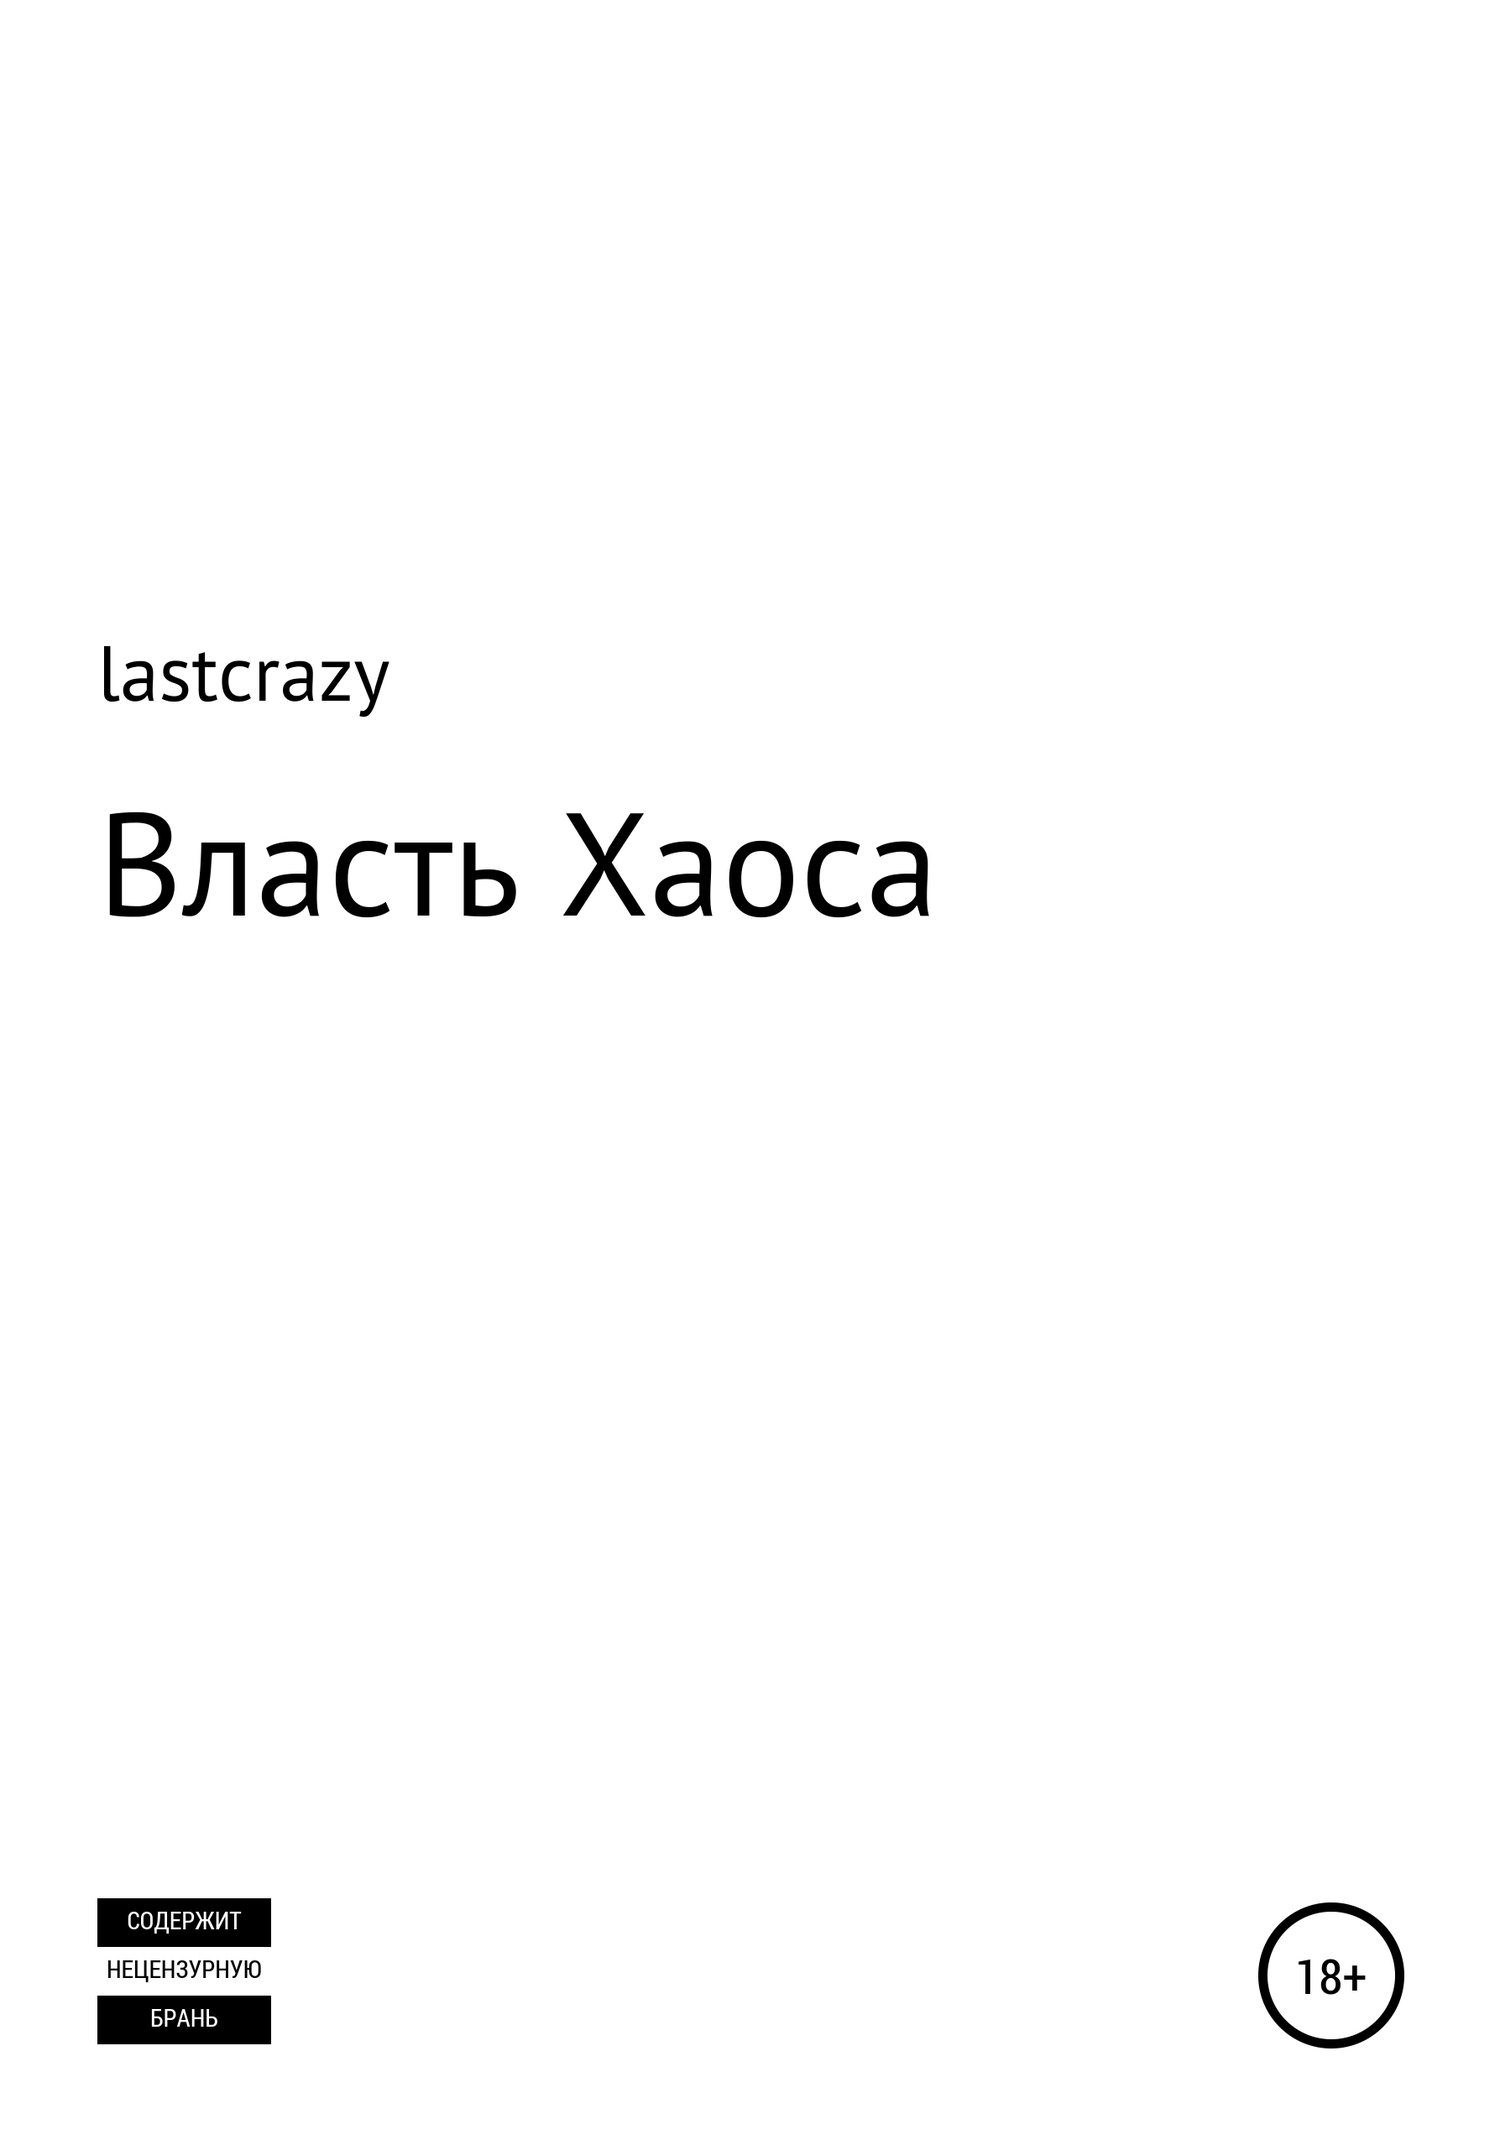 Власть Хаоса - lastcrazy